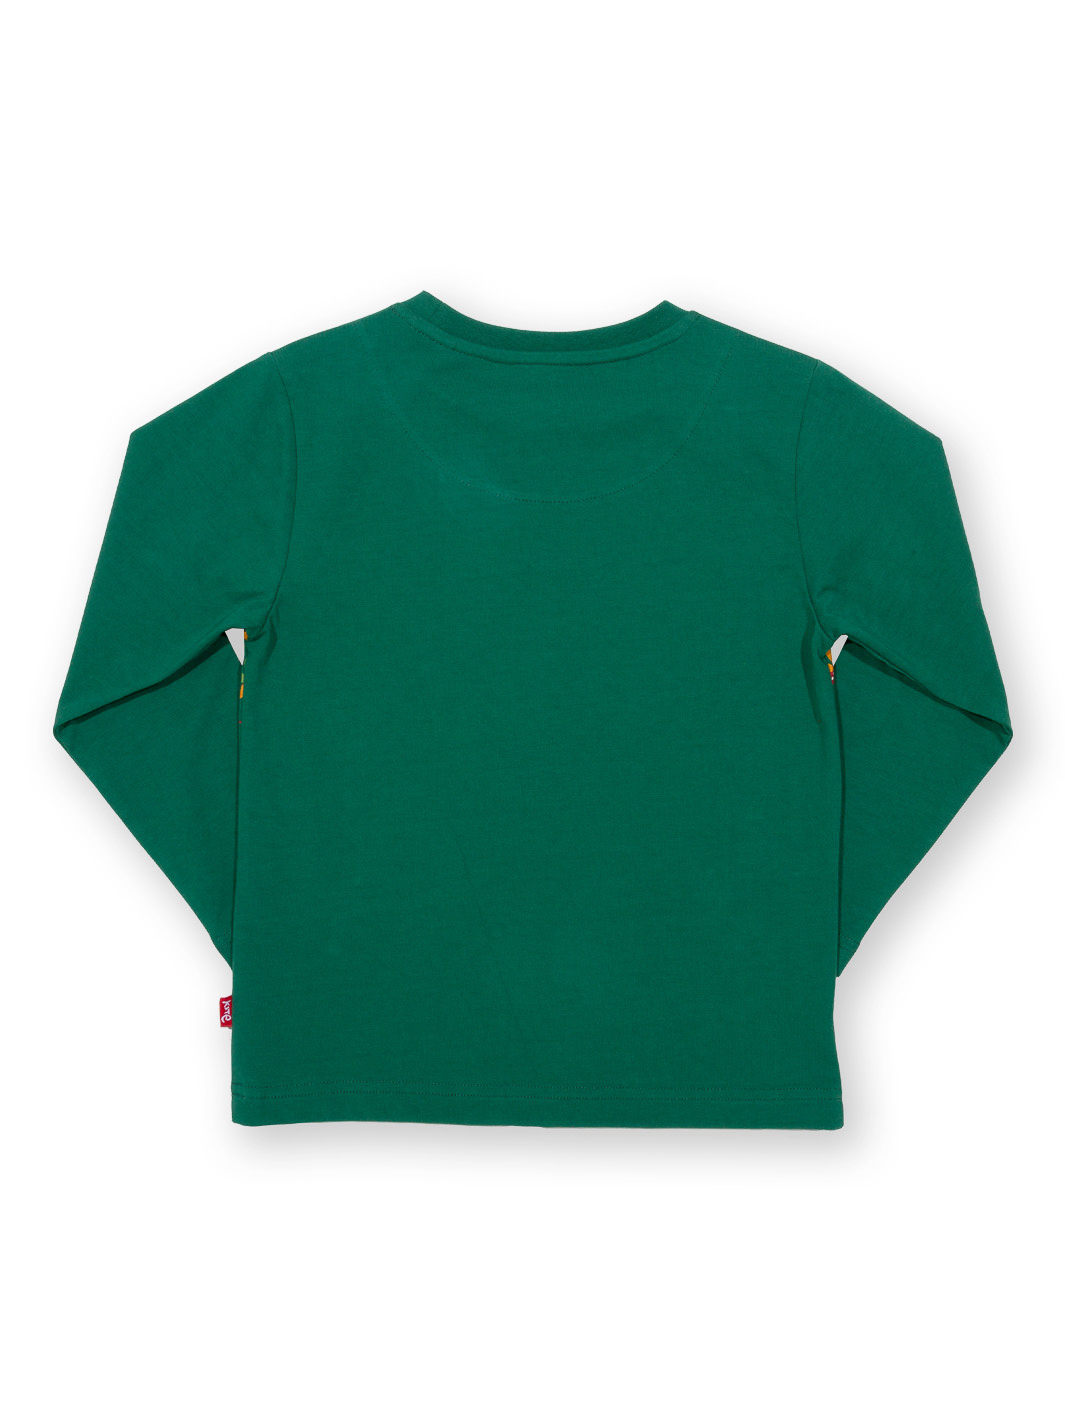 Shirt Jurassic Journey grün von Kite Clothing